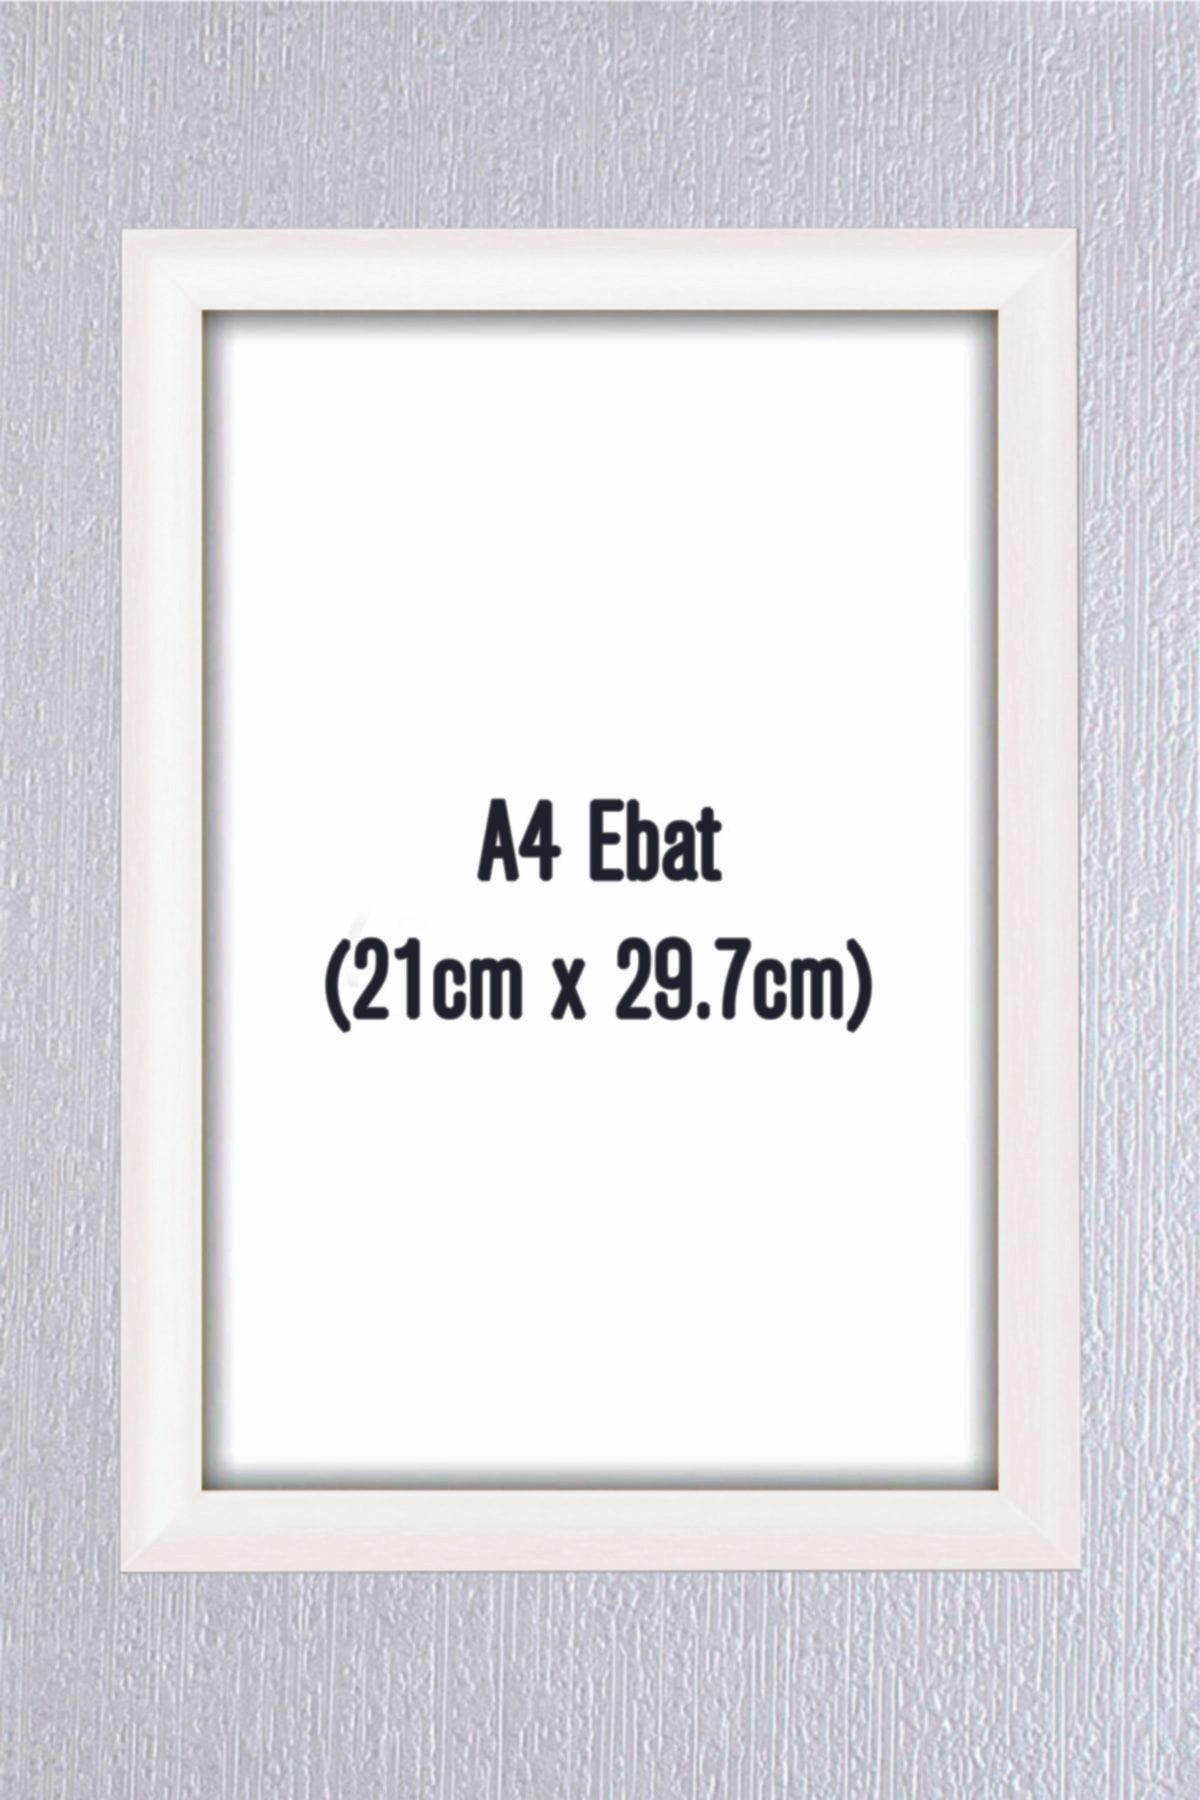 enmalife A4 Beyaz Renkte Çerçeve Belge Sertifika Ve Resim Için 21cm X 29,7 Cm